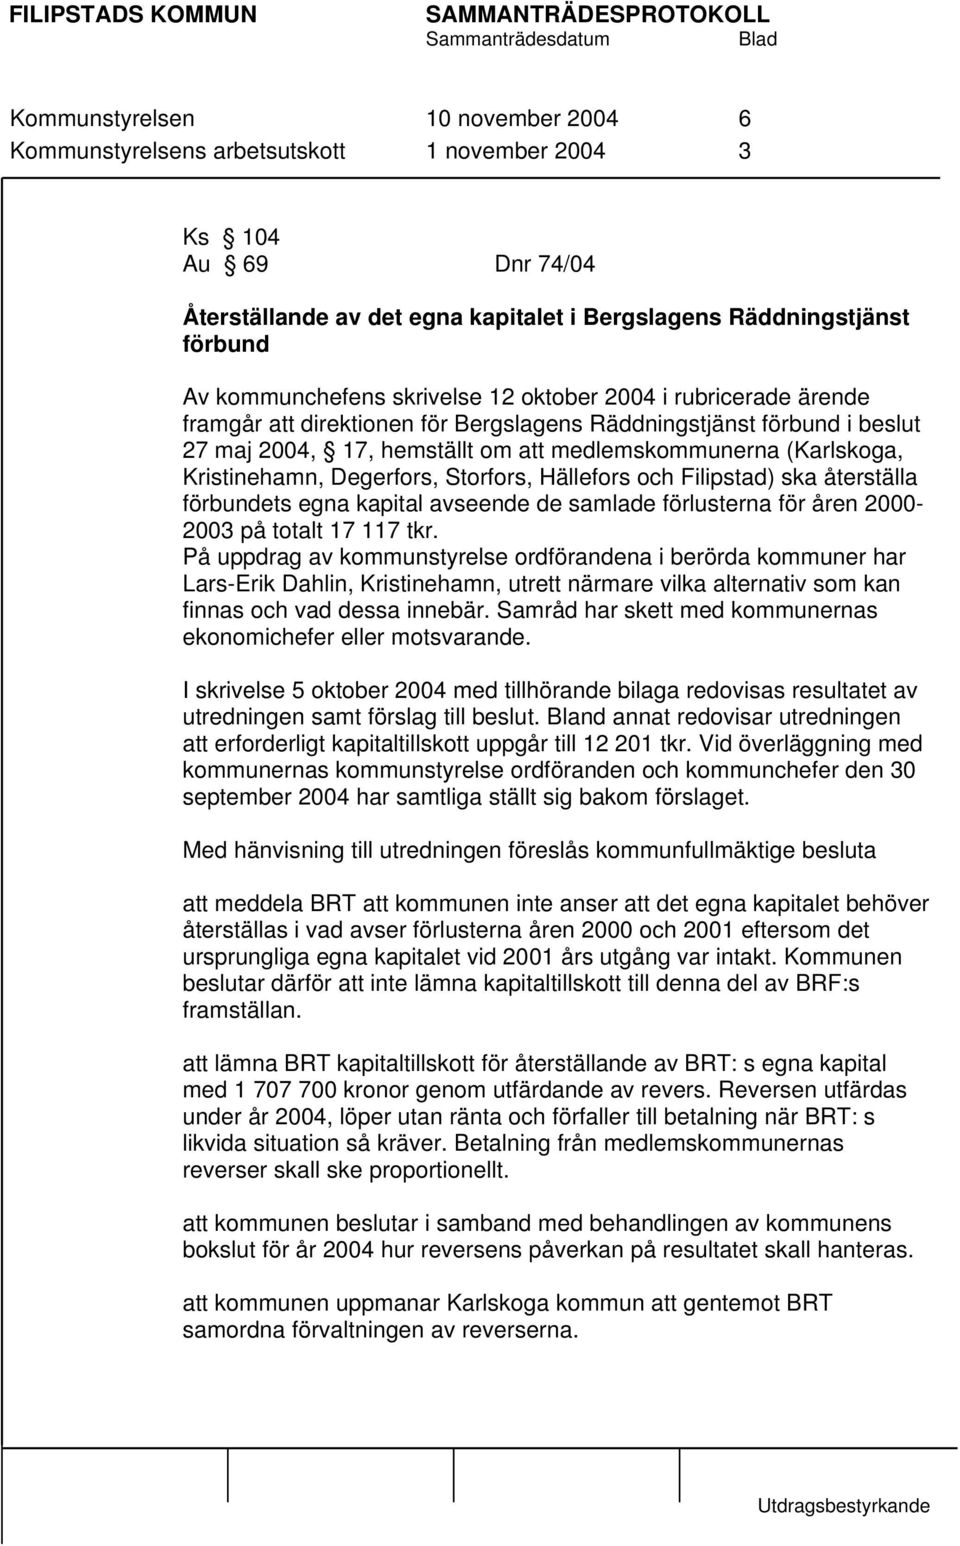 Degerfors, Storfors, Hällefors och Filipstad) ska återställa förbundets egna kapital avseende de samlade förlusterna för åren 2000-2003 på totalt 17 117 tkr.